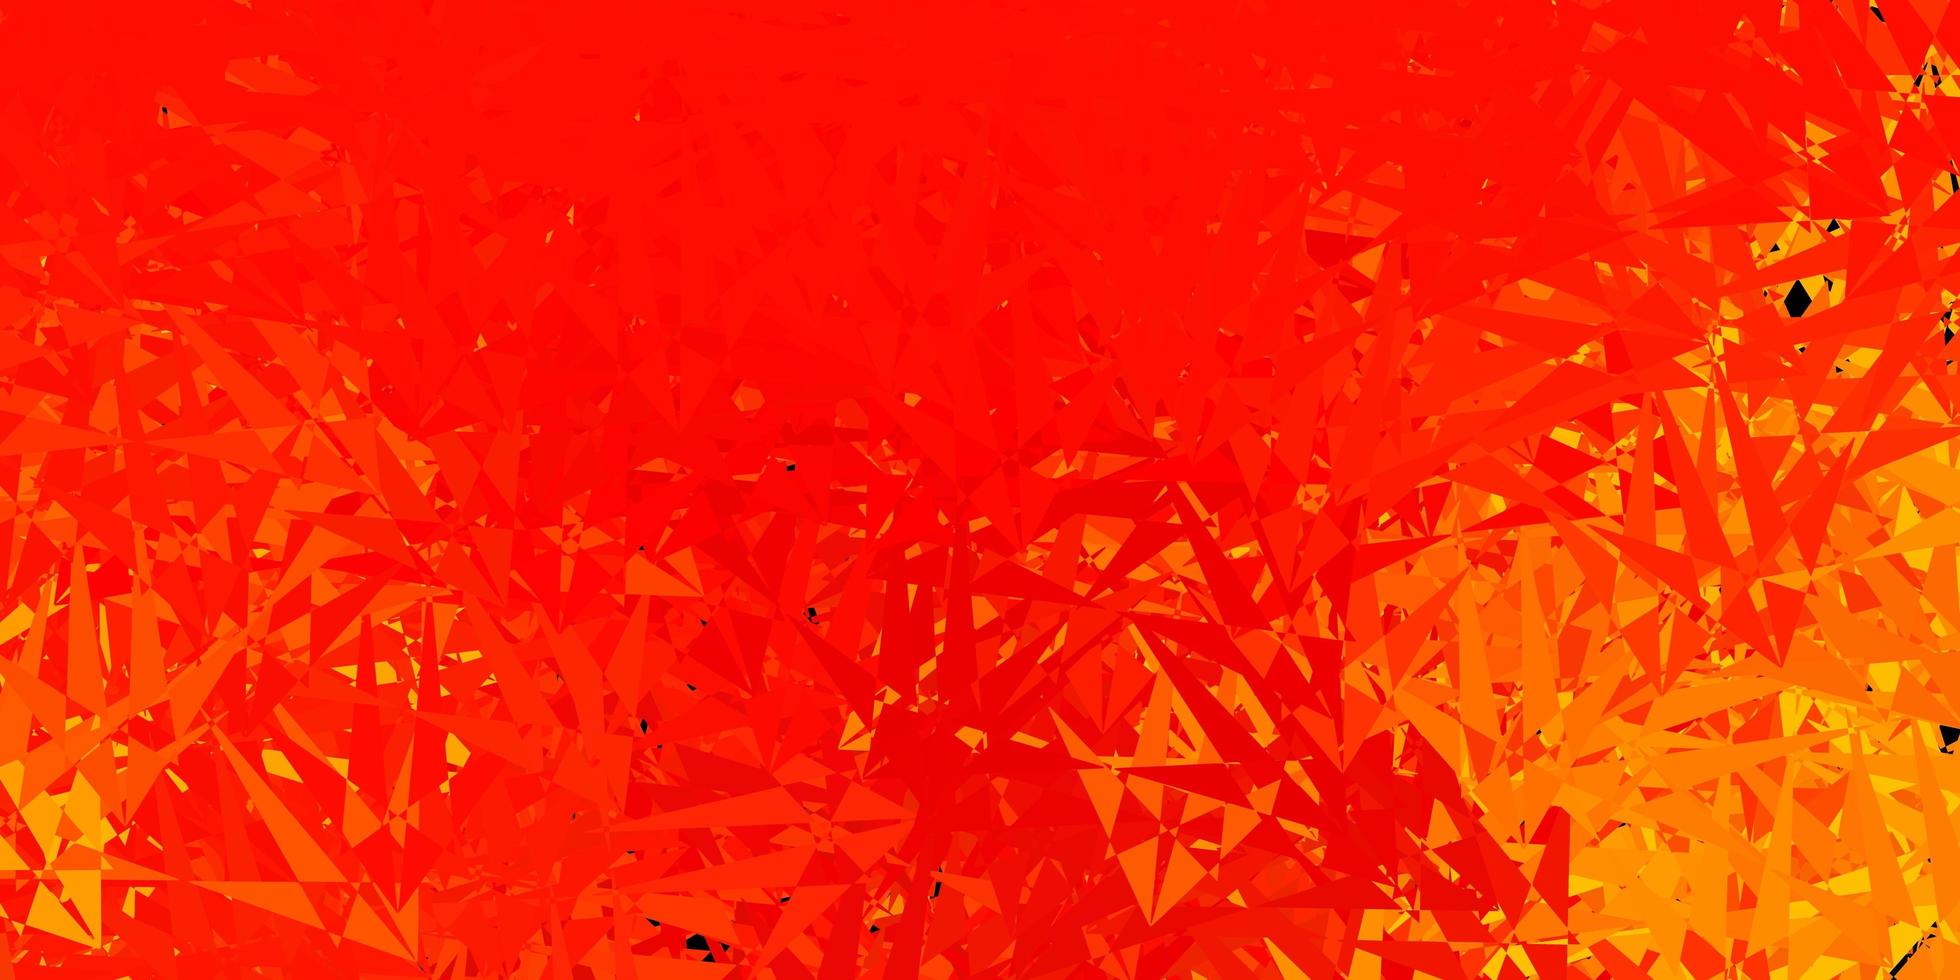 texture de vecteur orange clair avec des triangles aléatoires.